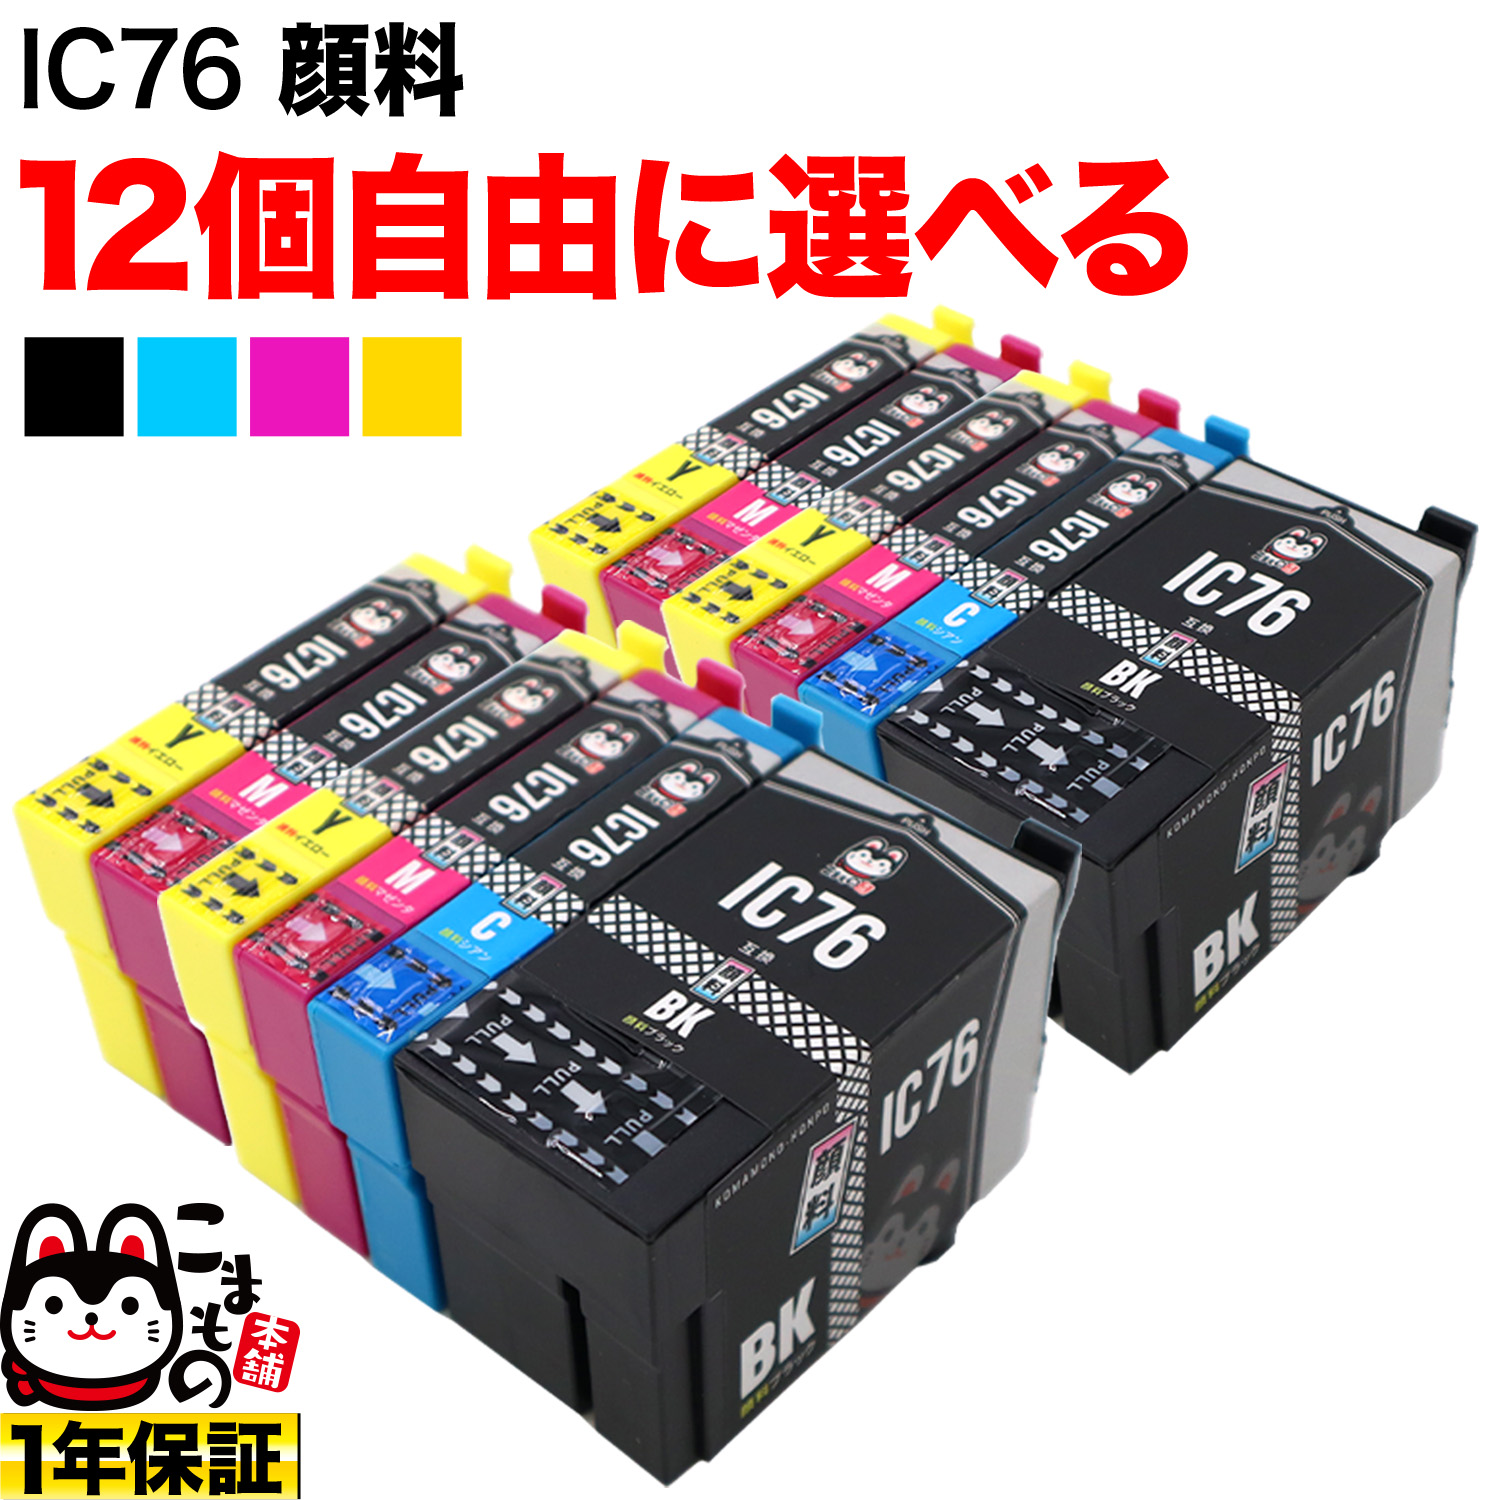 エプソン用 IC76互換インクカートリッジ 大容量 顔料 自由選択12個セット フリーチョイス 【送料無料】 選べる12個セット （品番：QR-FC-IC76PG-12）詳細情報【こまもの本舗】